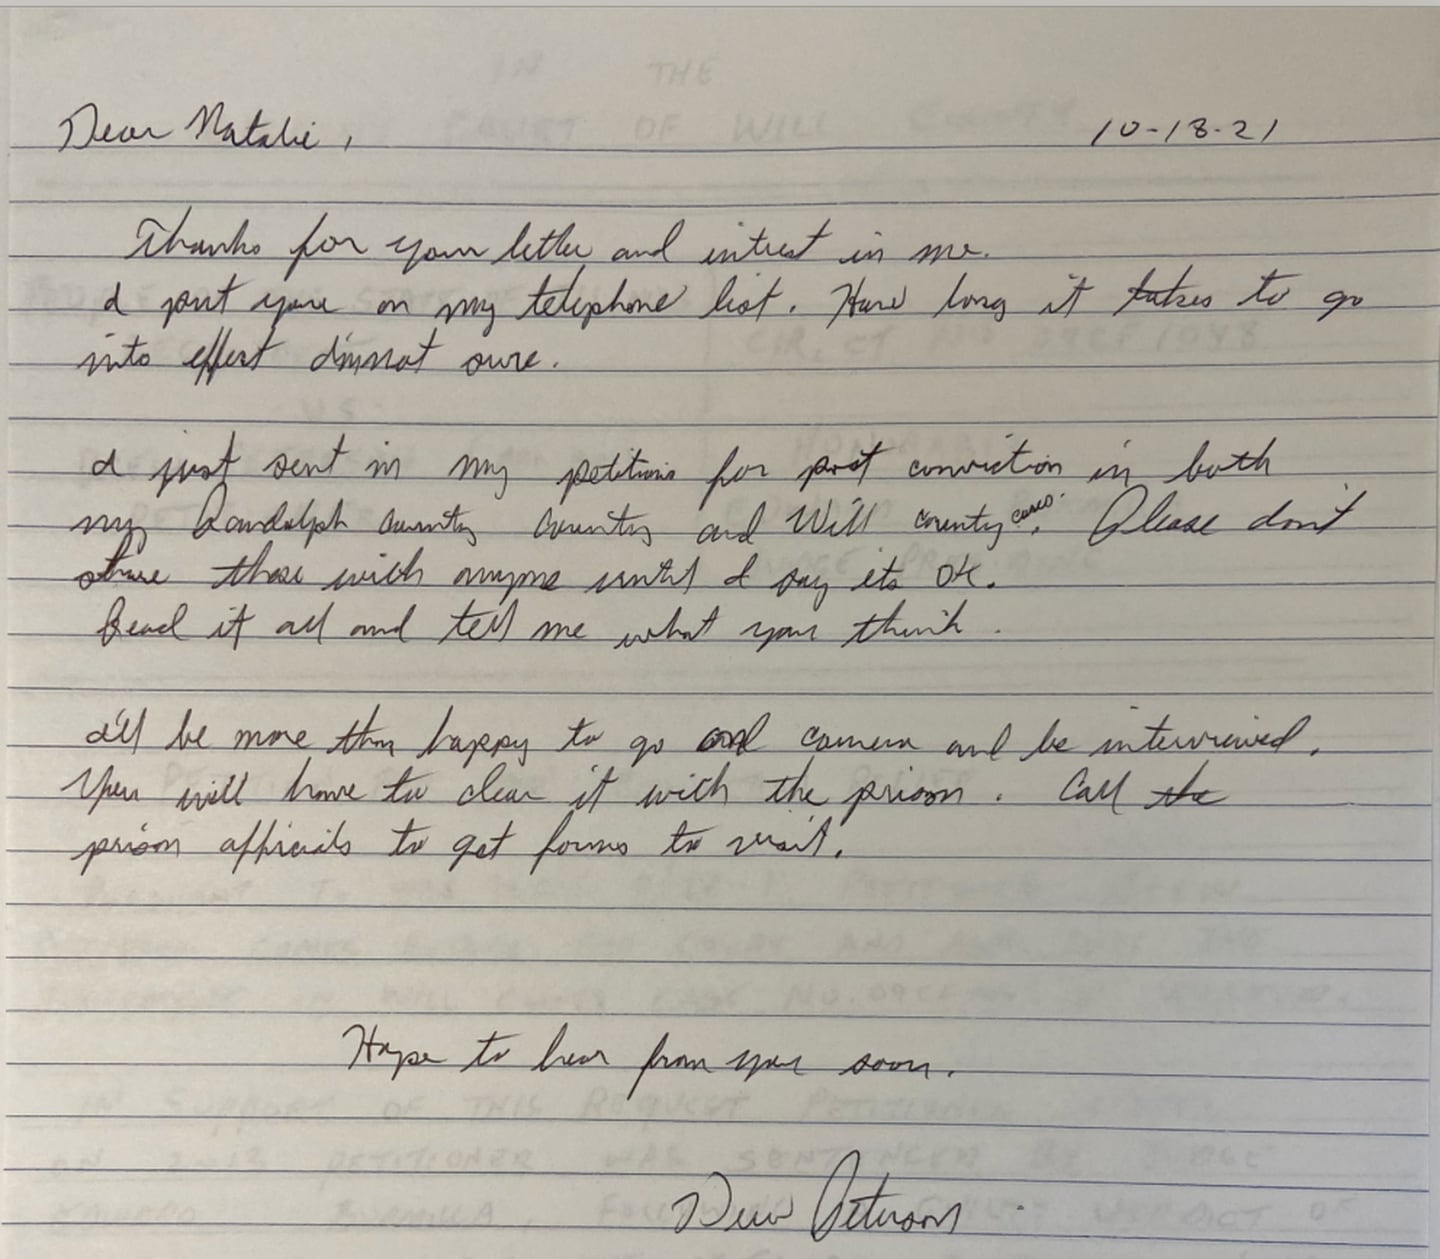 A letter written by wife-killer Drew Peterson